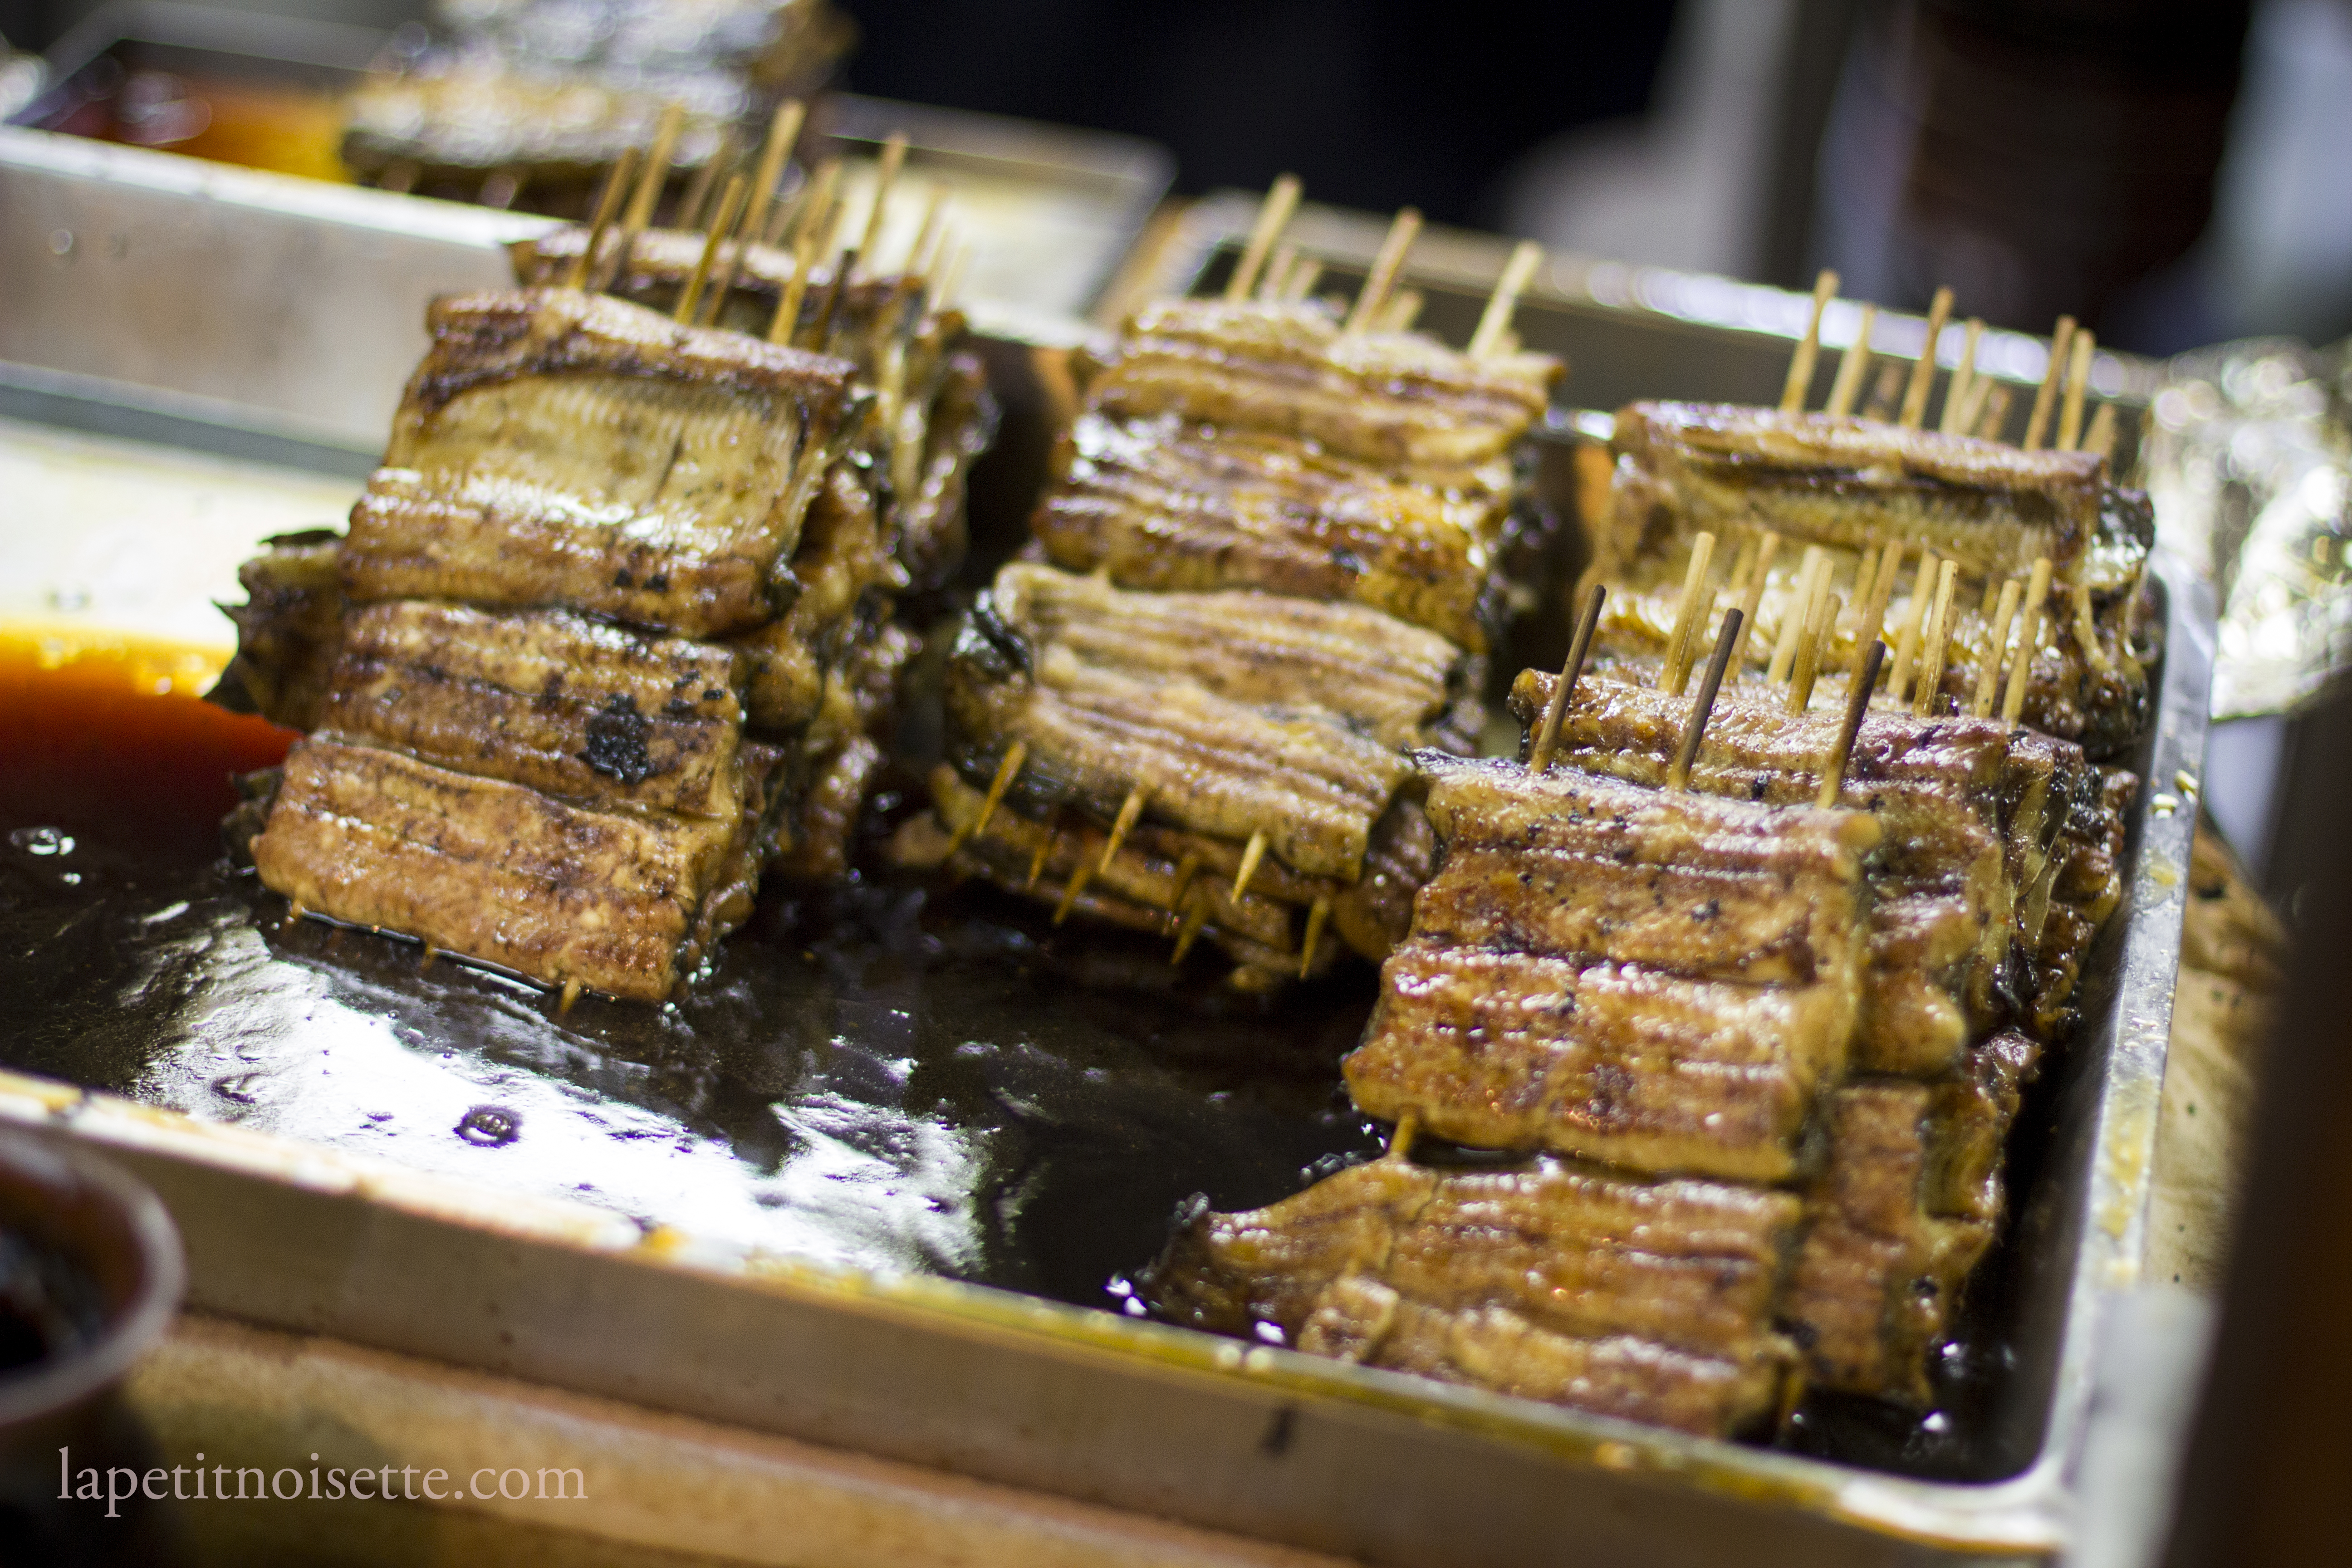 skewers of grilled eel soaking in sauce.